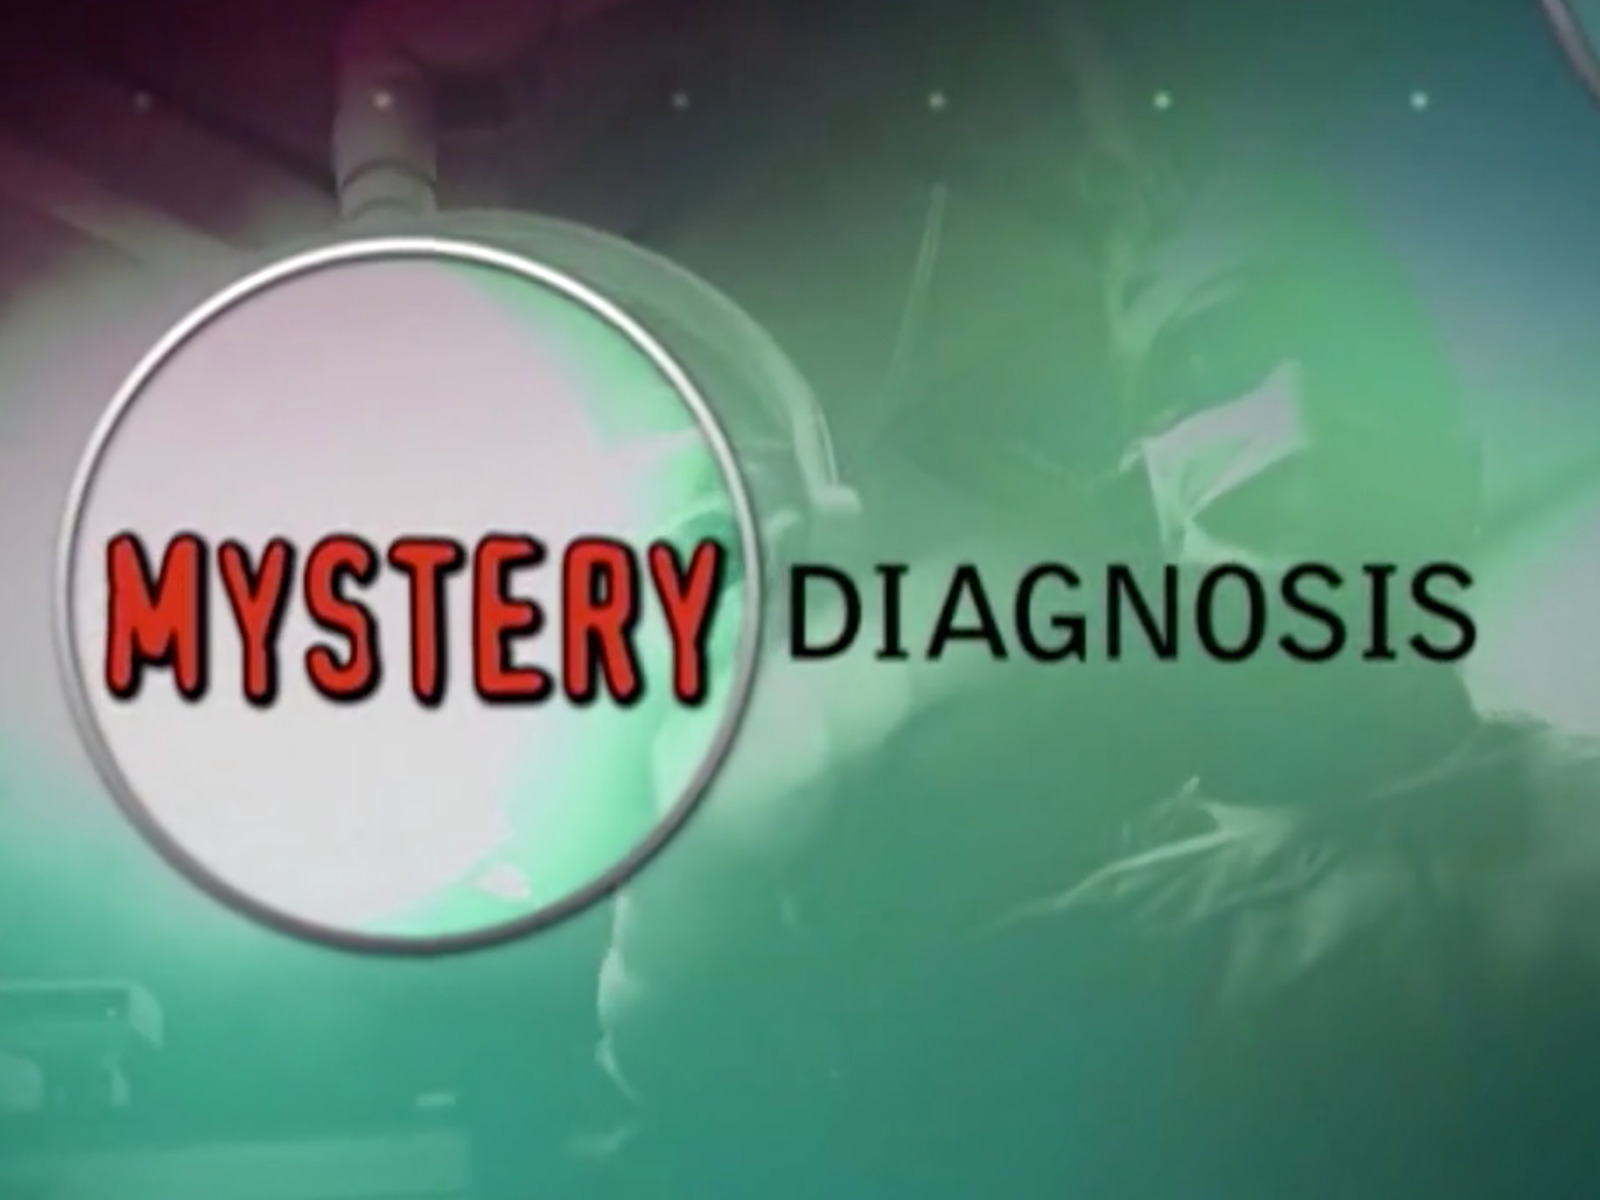 Caratula de Mystery Diagnosis (Diagnósticos Misteriosos) 